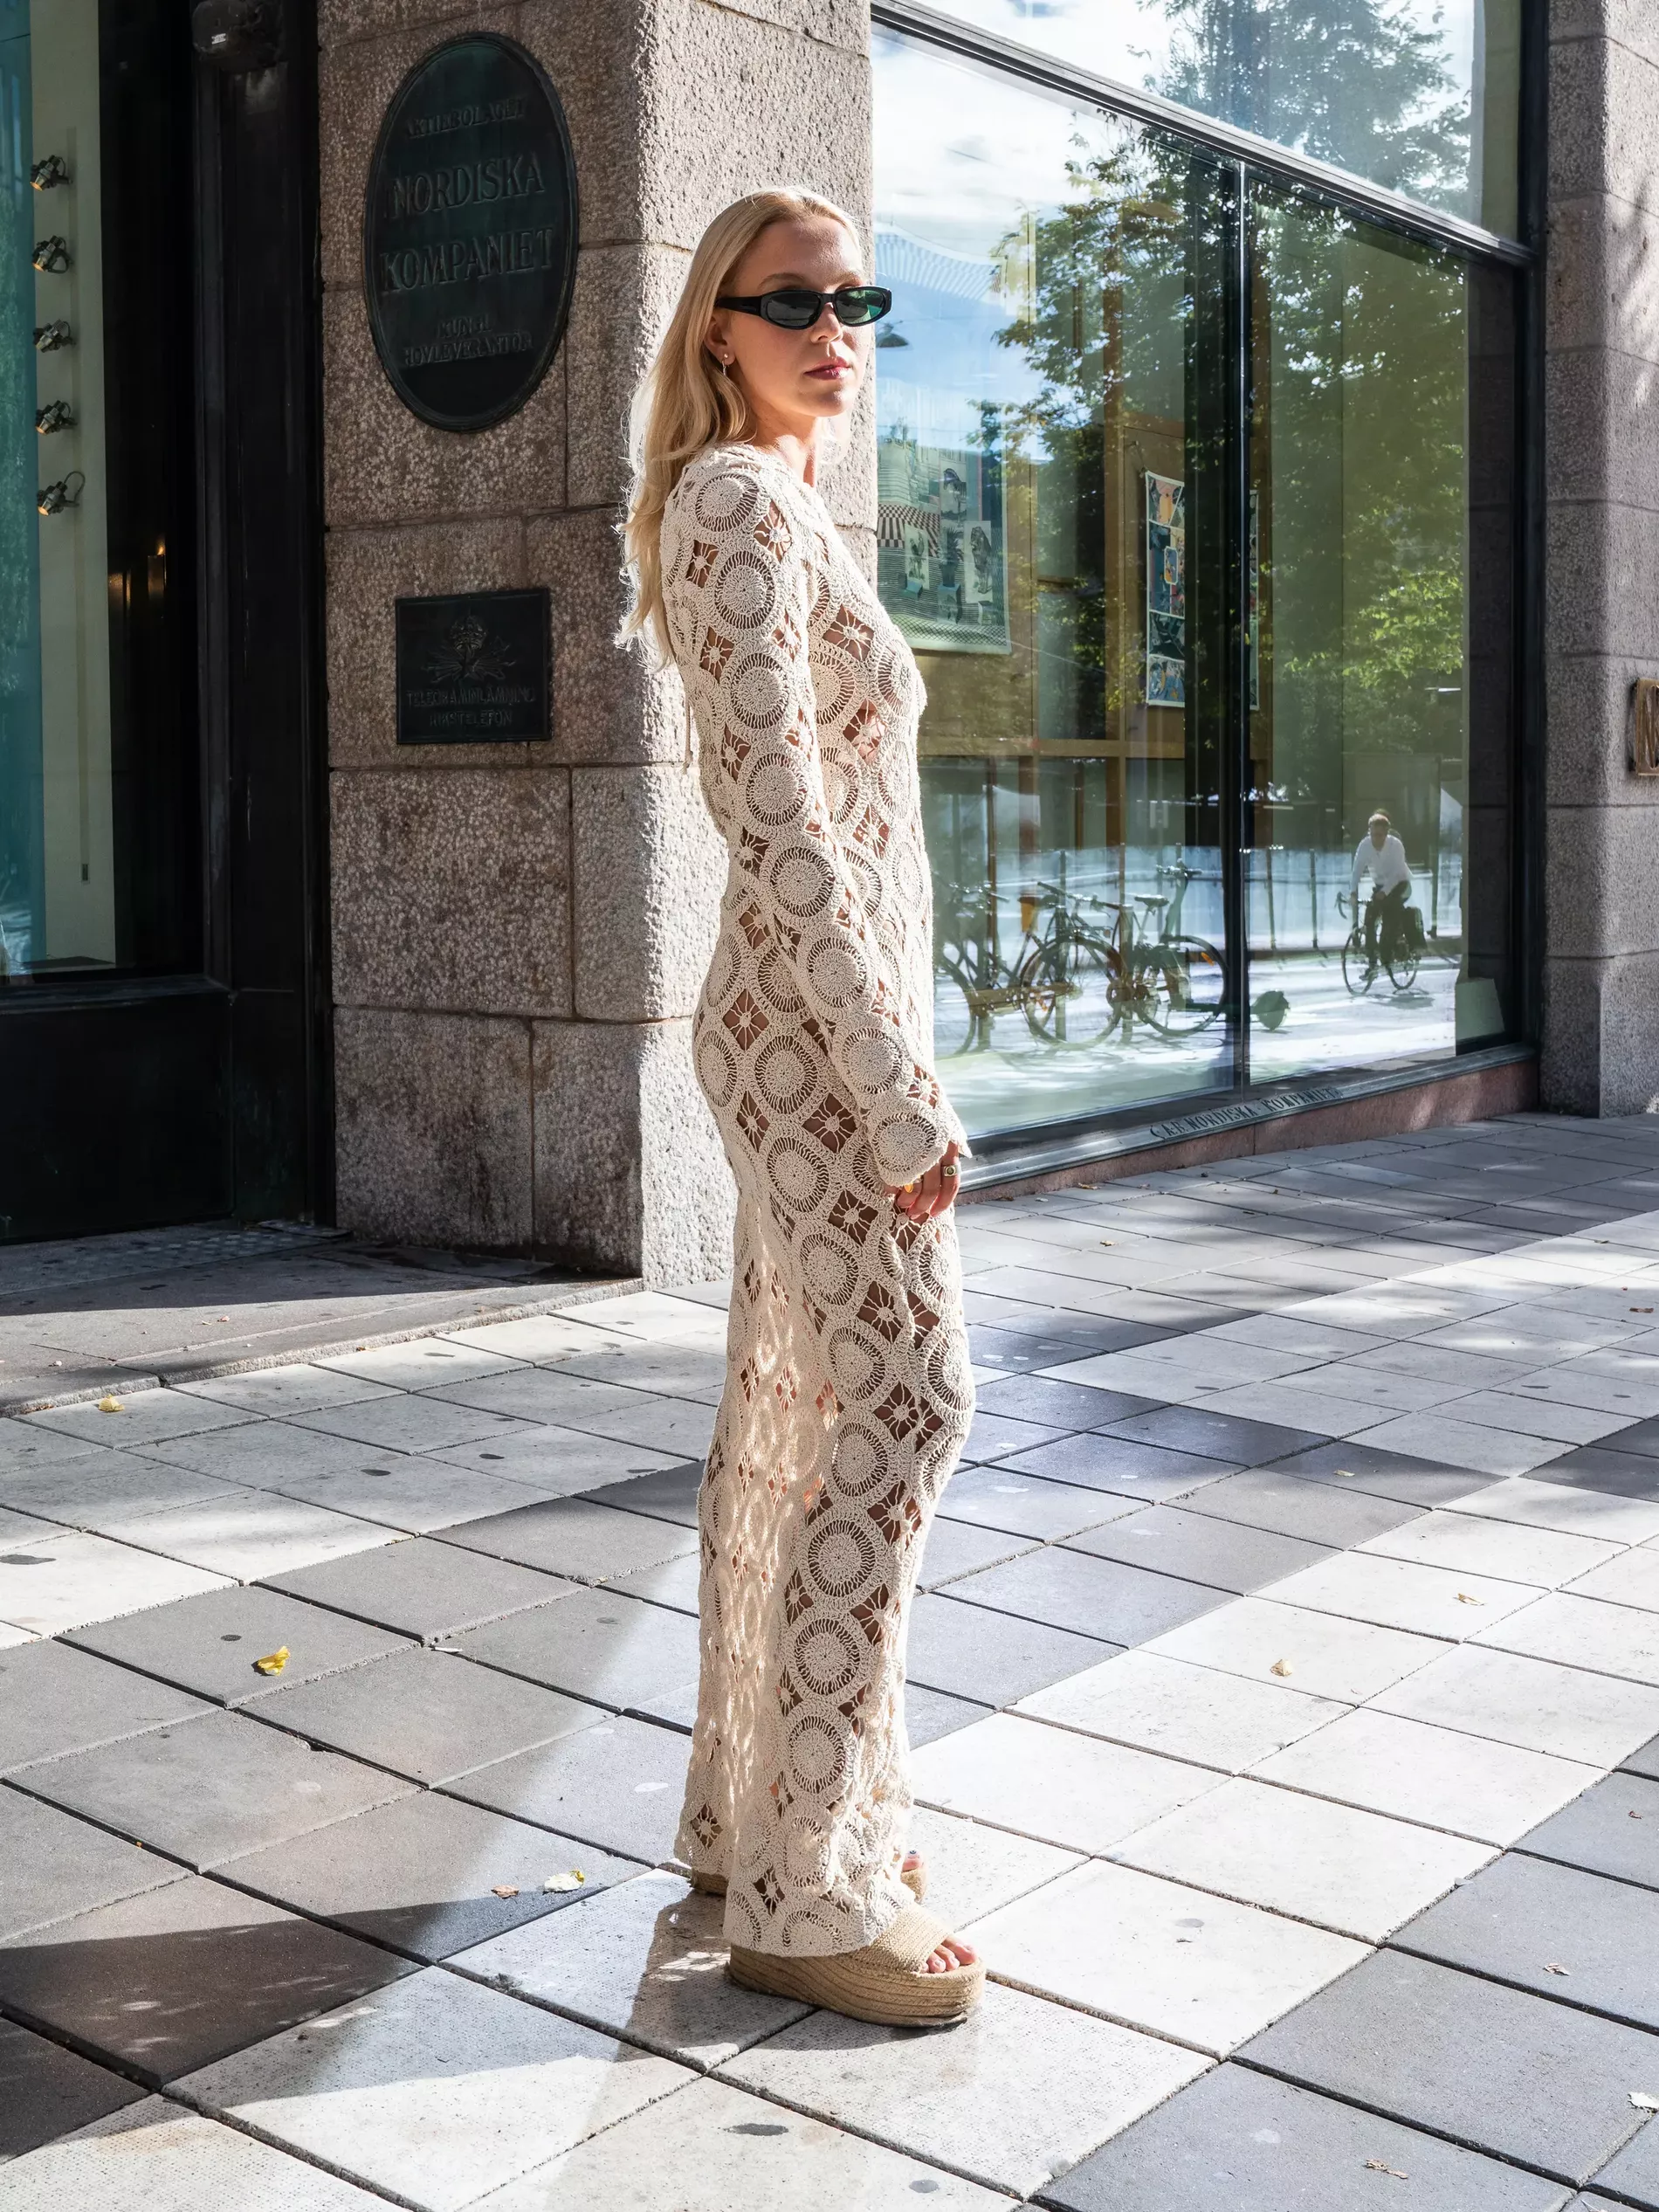 Stockholm fashion week guest wears crochet long sleeve dress 